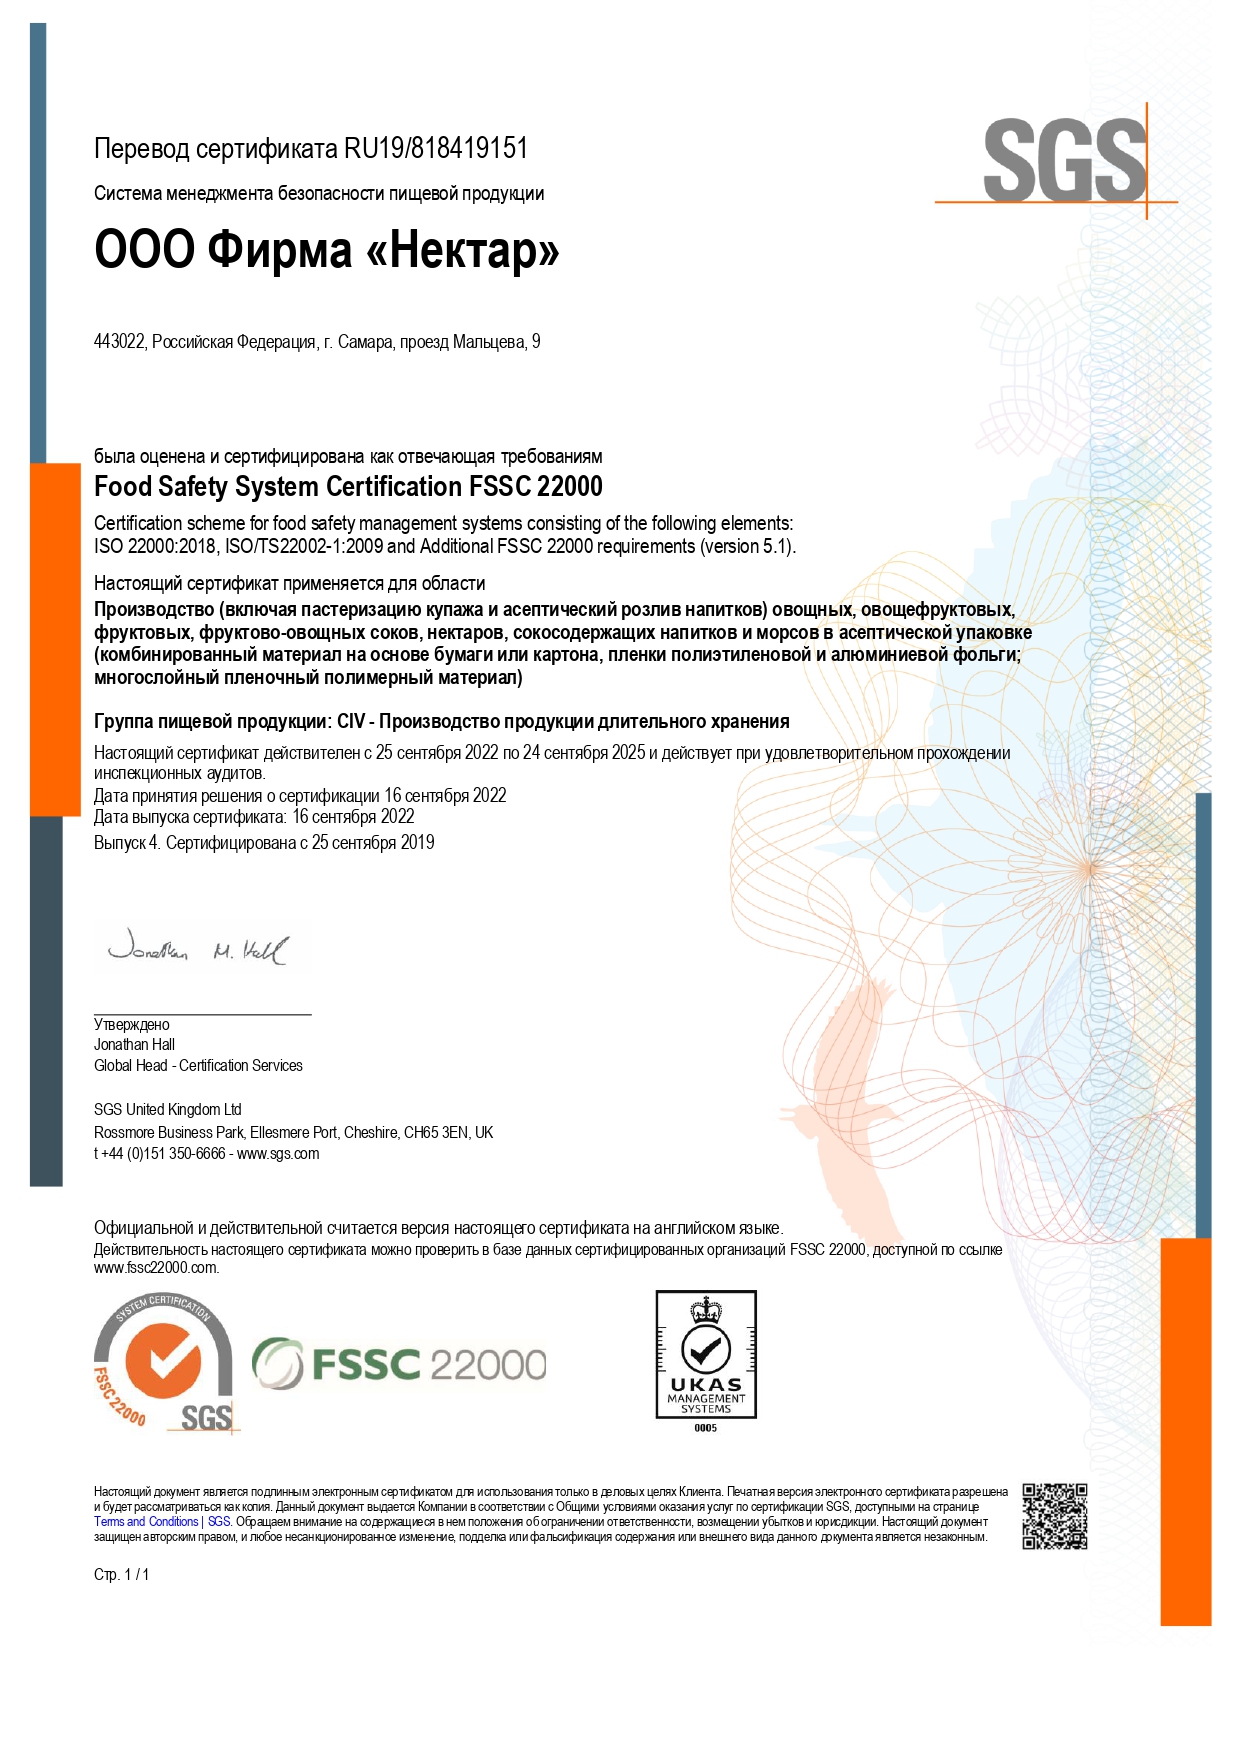 Сертификат соответствия системы менеджмента безопасности пищевой продукции Food Safety System Certification FSSC 22000